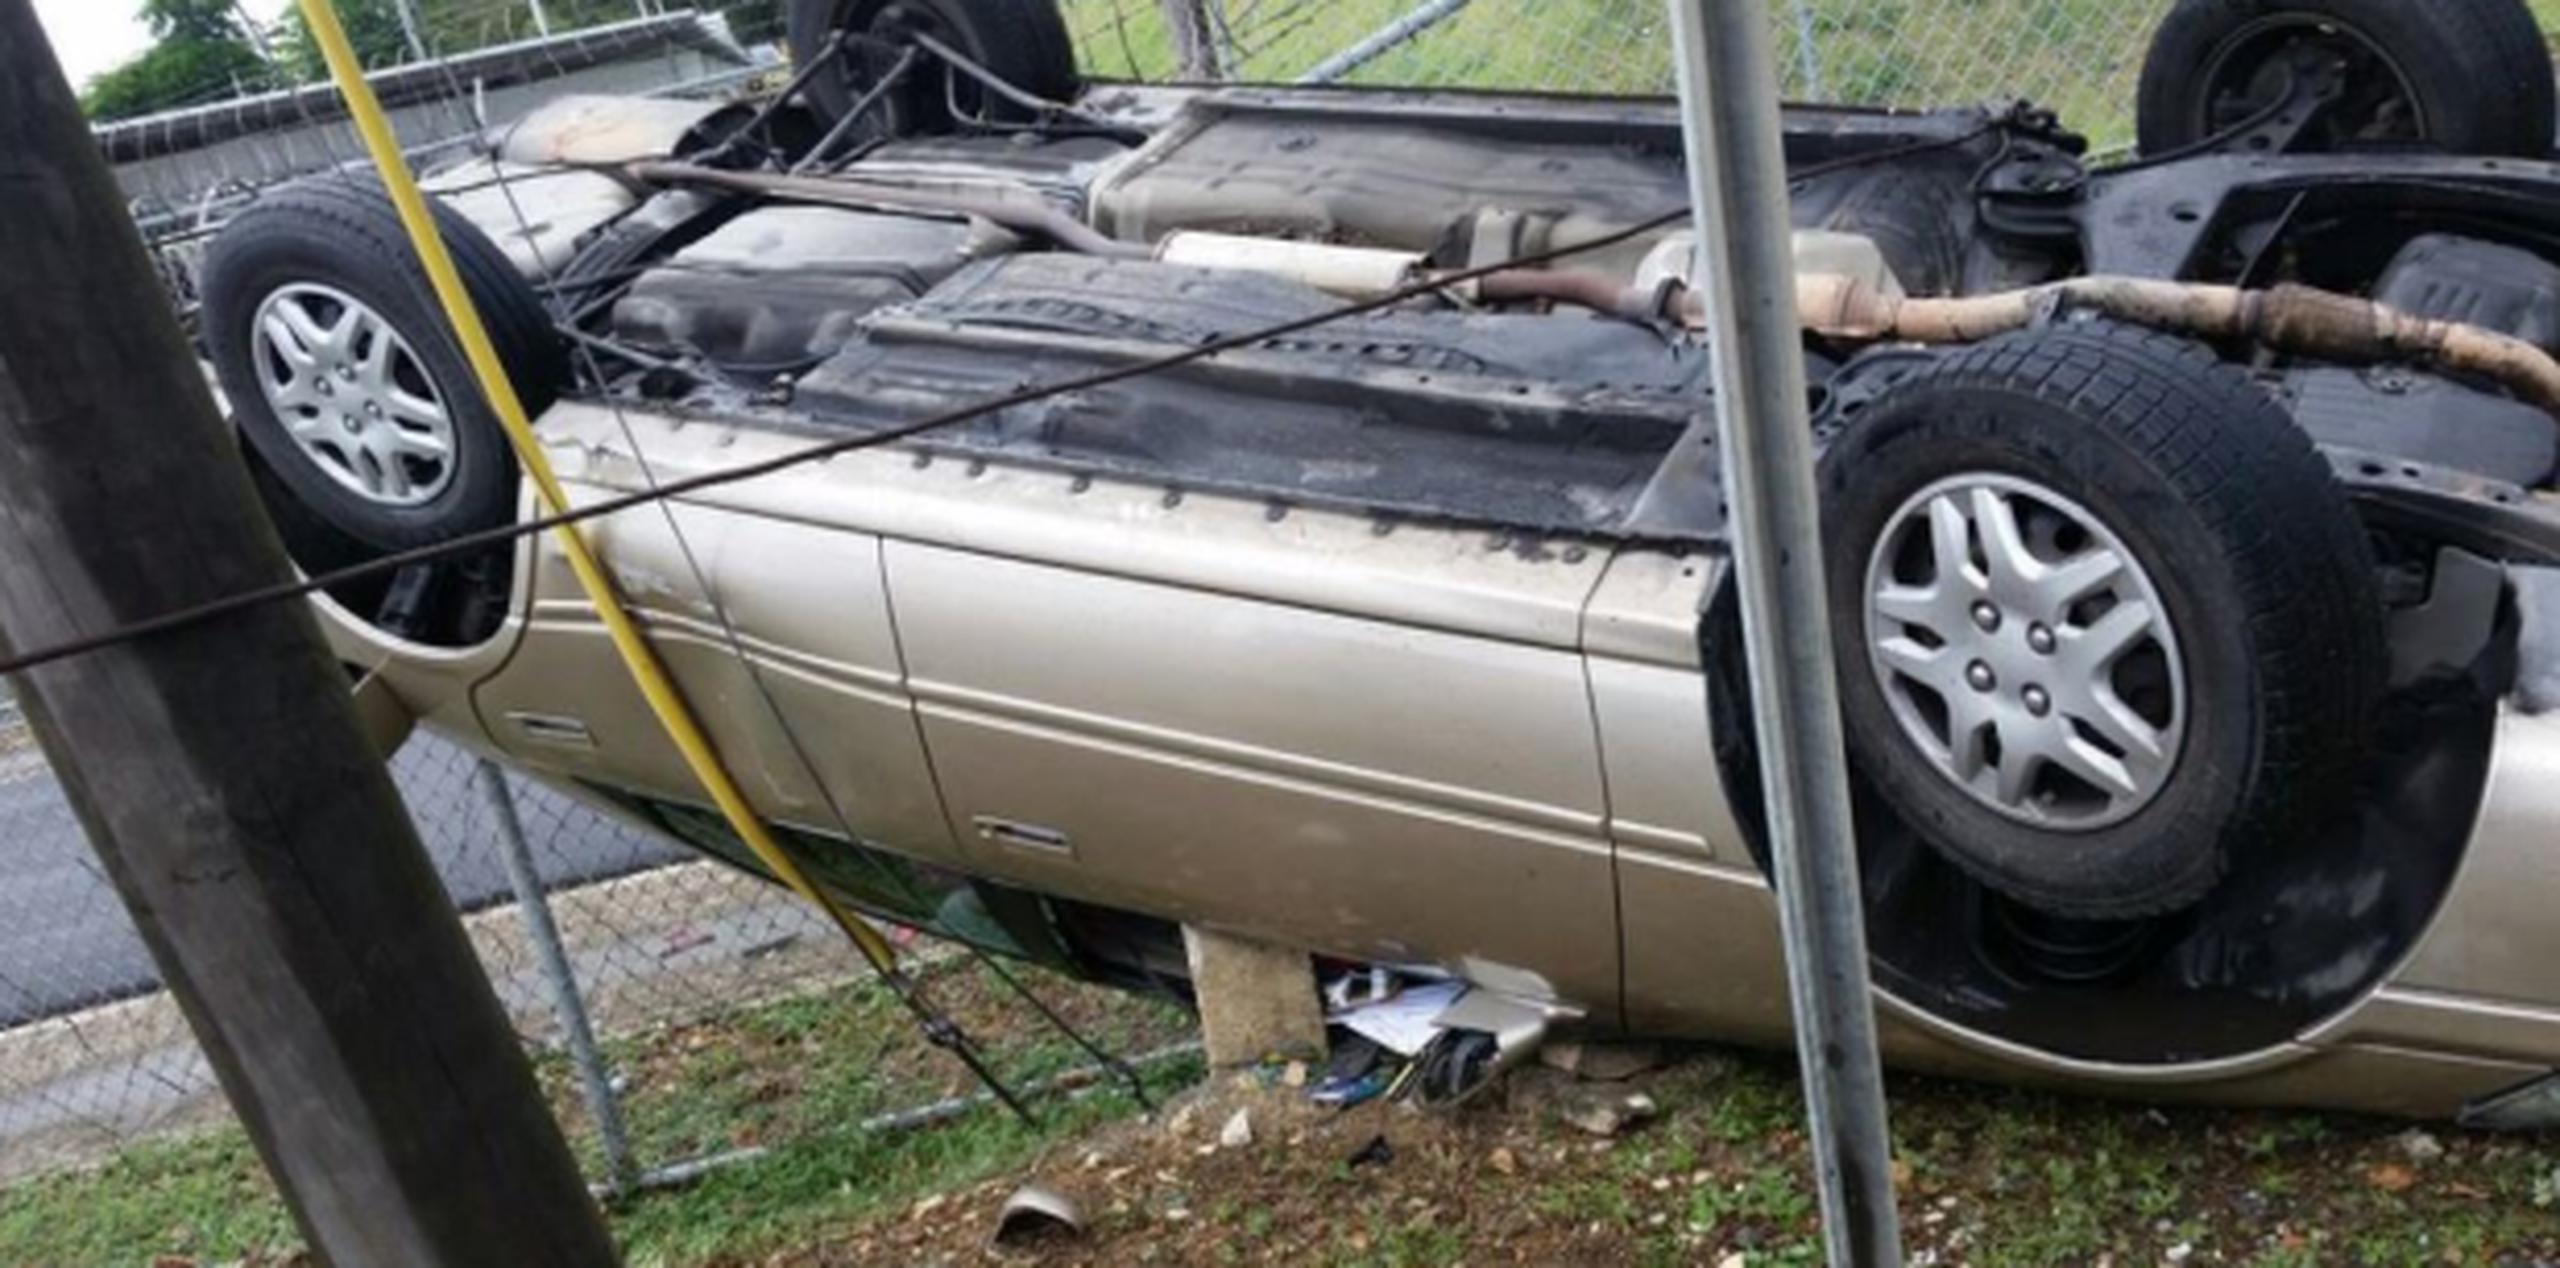 La mujer y sus hijos, incluyendo un bebé, sufrieron heridas cuando el Toyota Camry en el que viajaban se volcó en la carretera PR-28, jurisdicción de Bayamón. (Twitter / Policía de Puerto Rico)